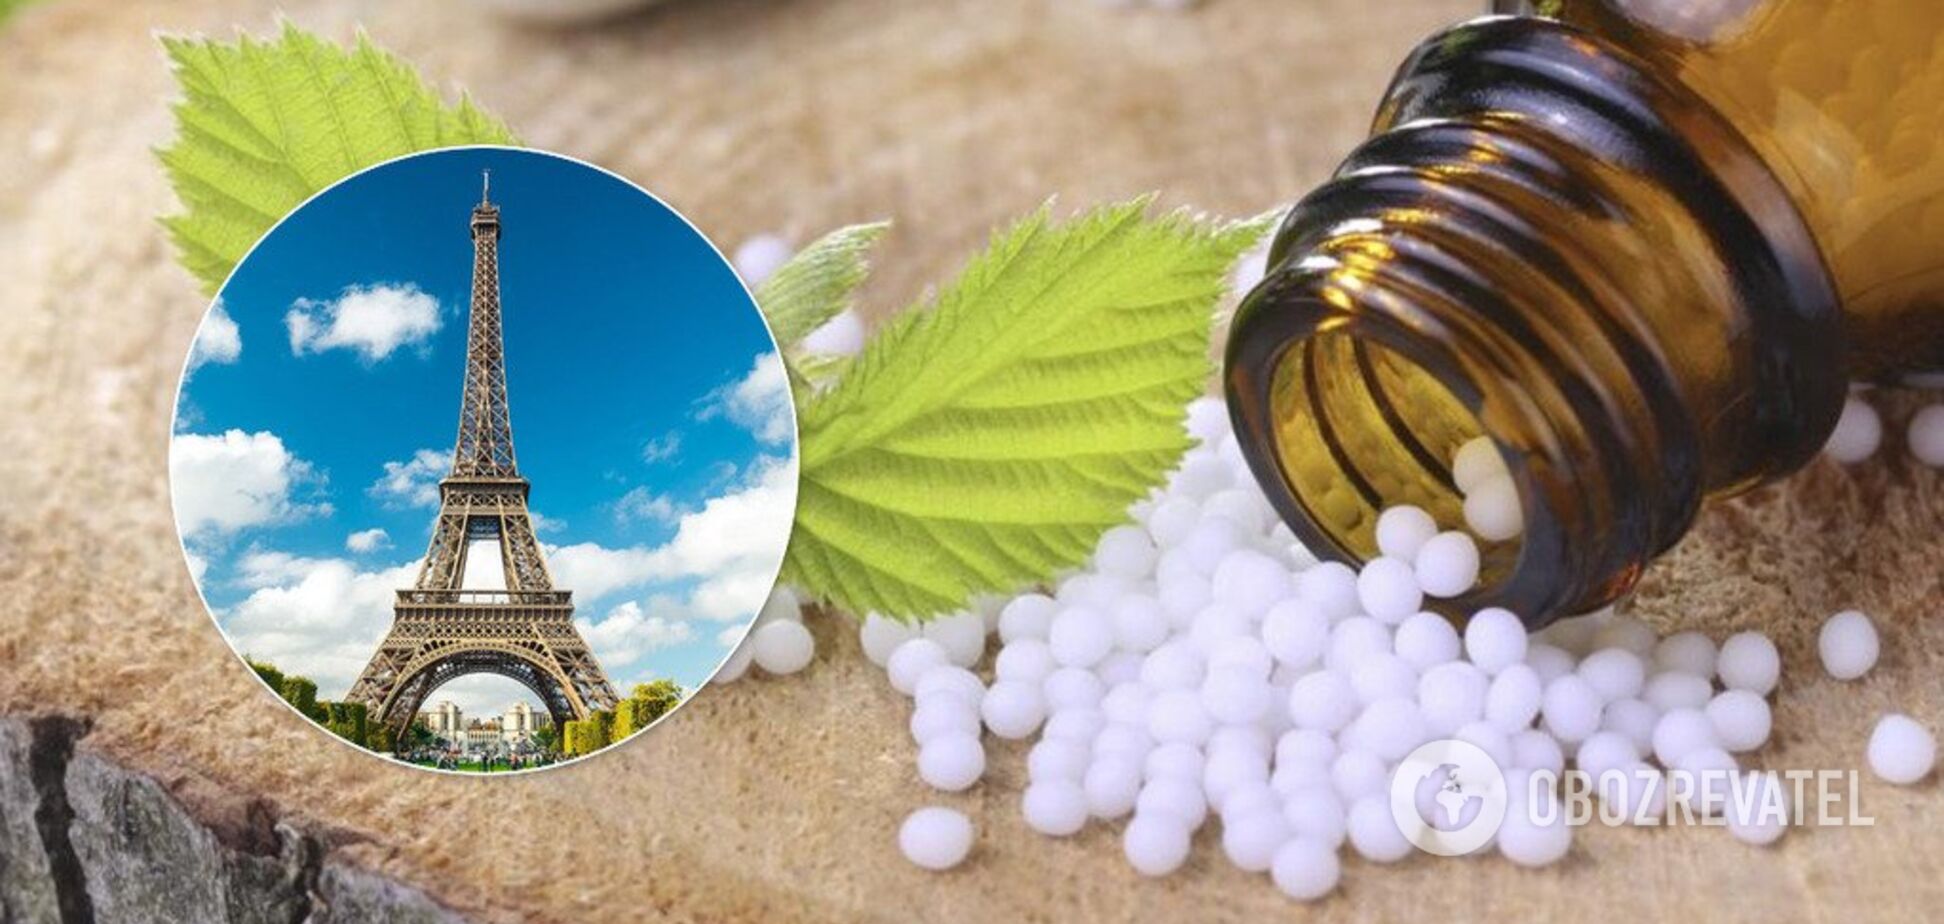 'Это – псевдолекарства!' Франция прекратит возмещать лечение гомеопатией